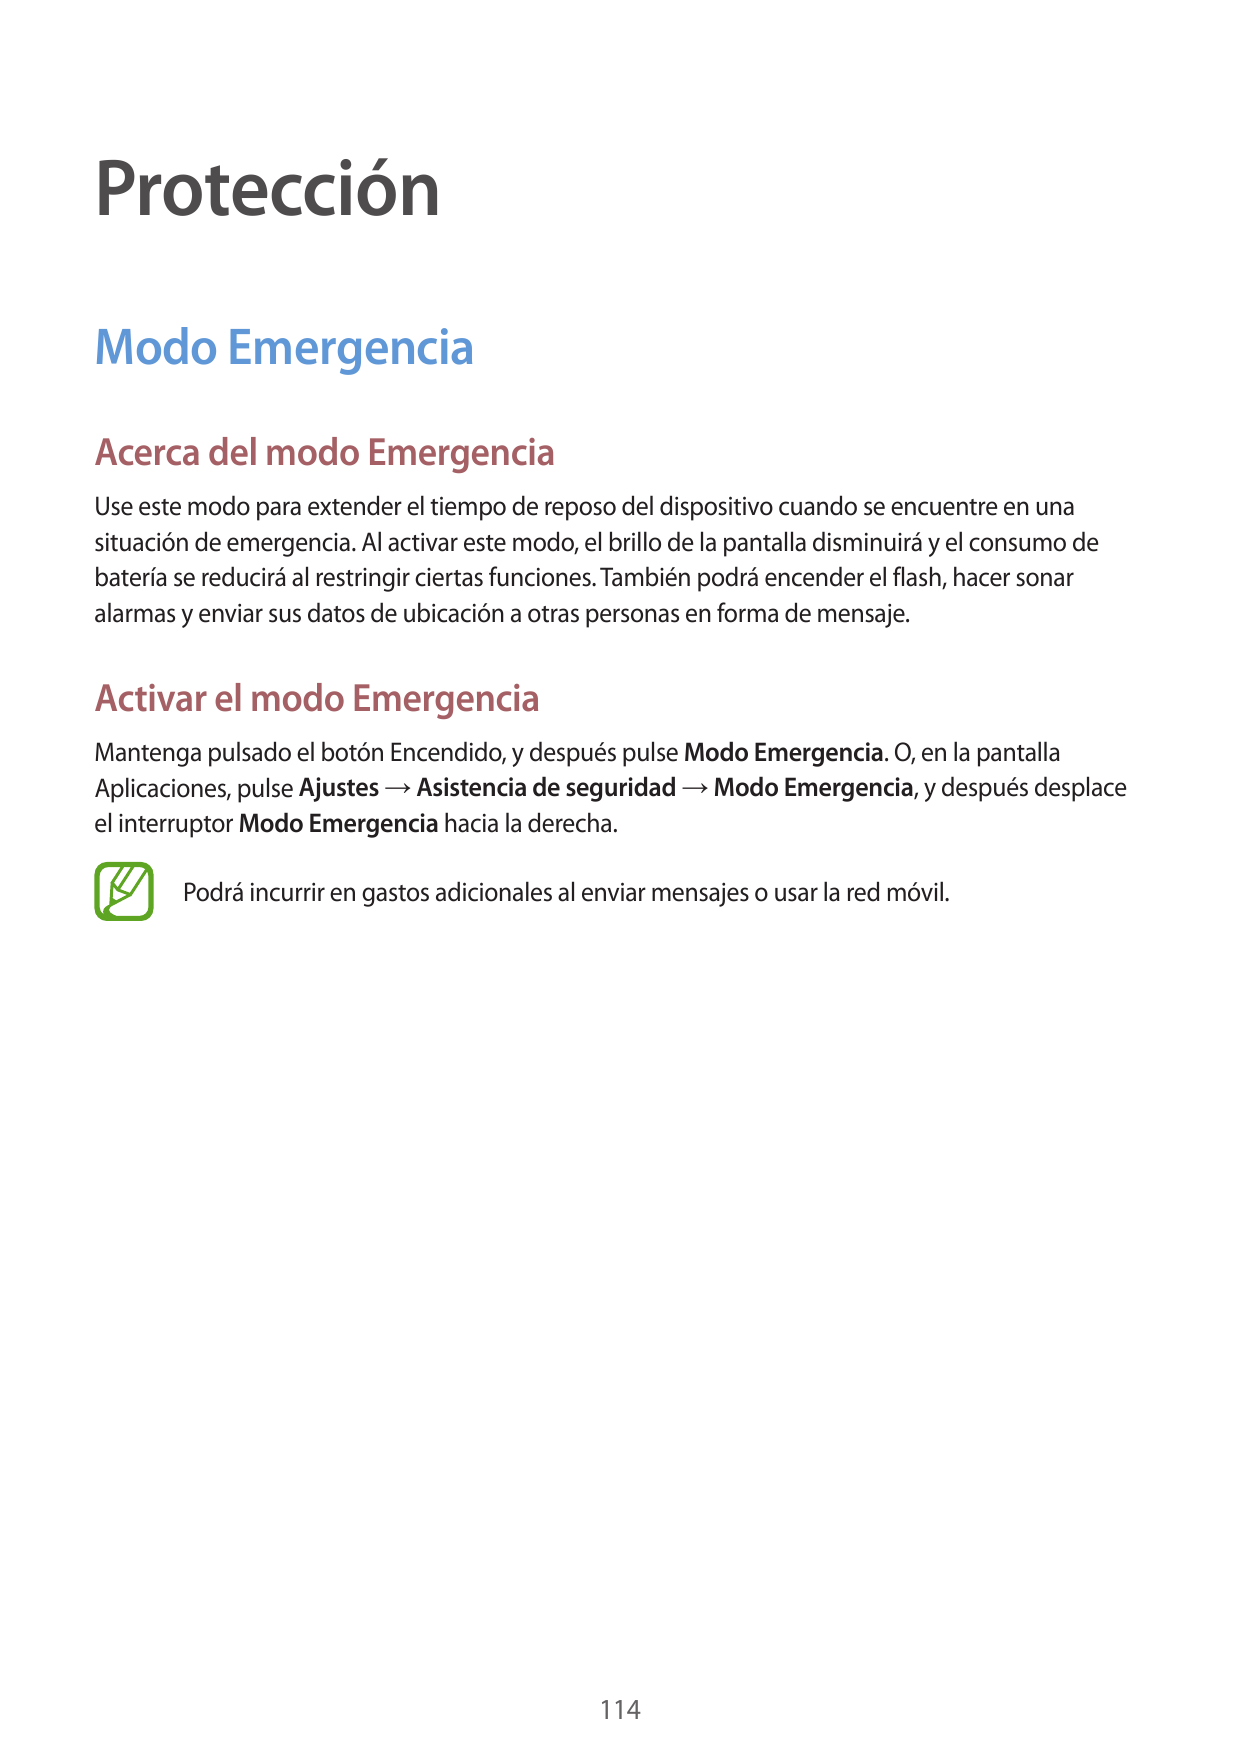 ProtecciónModo EmergenciaAcerca del modo EmergenciaUse este modo para extender el tiempo de reposo del dispositivo cuando se enc